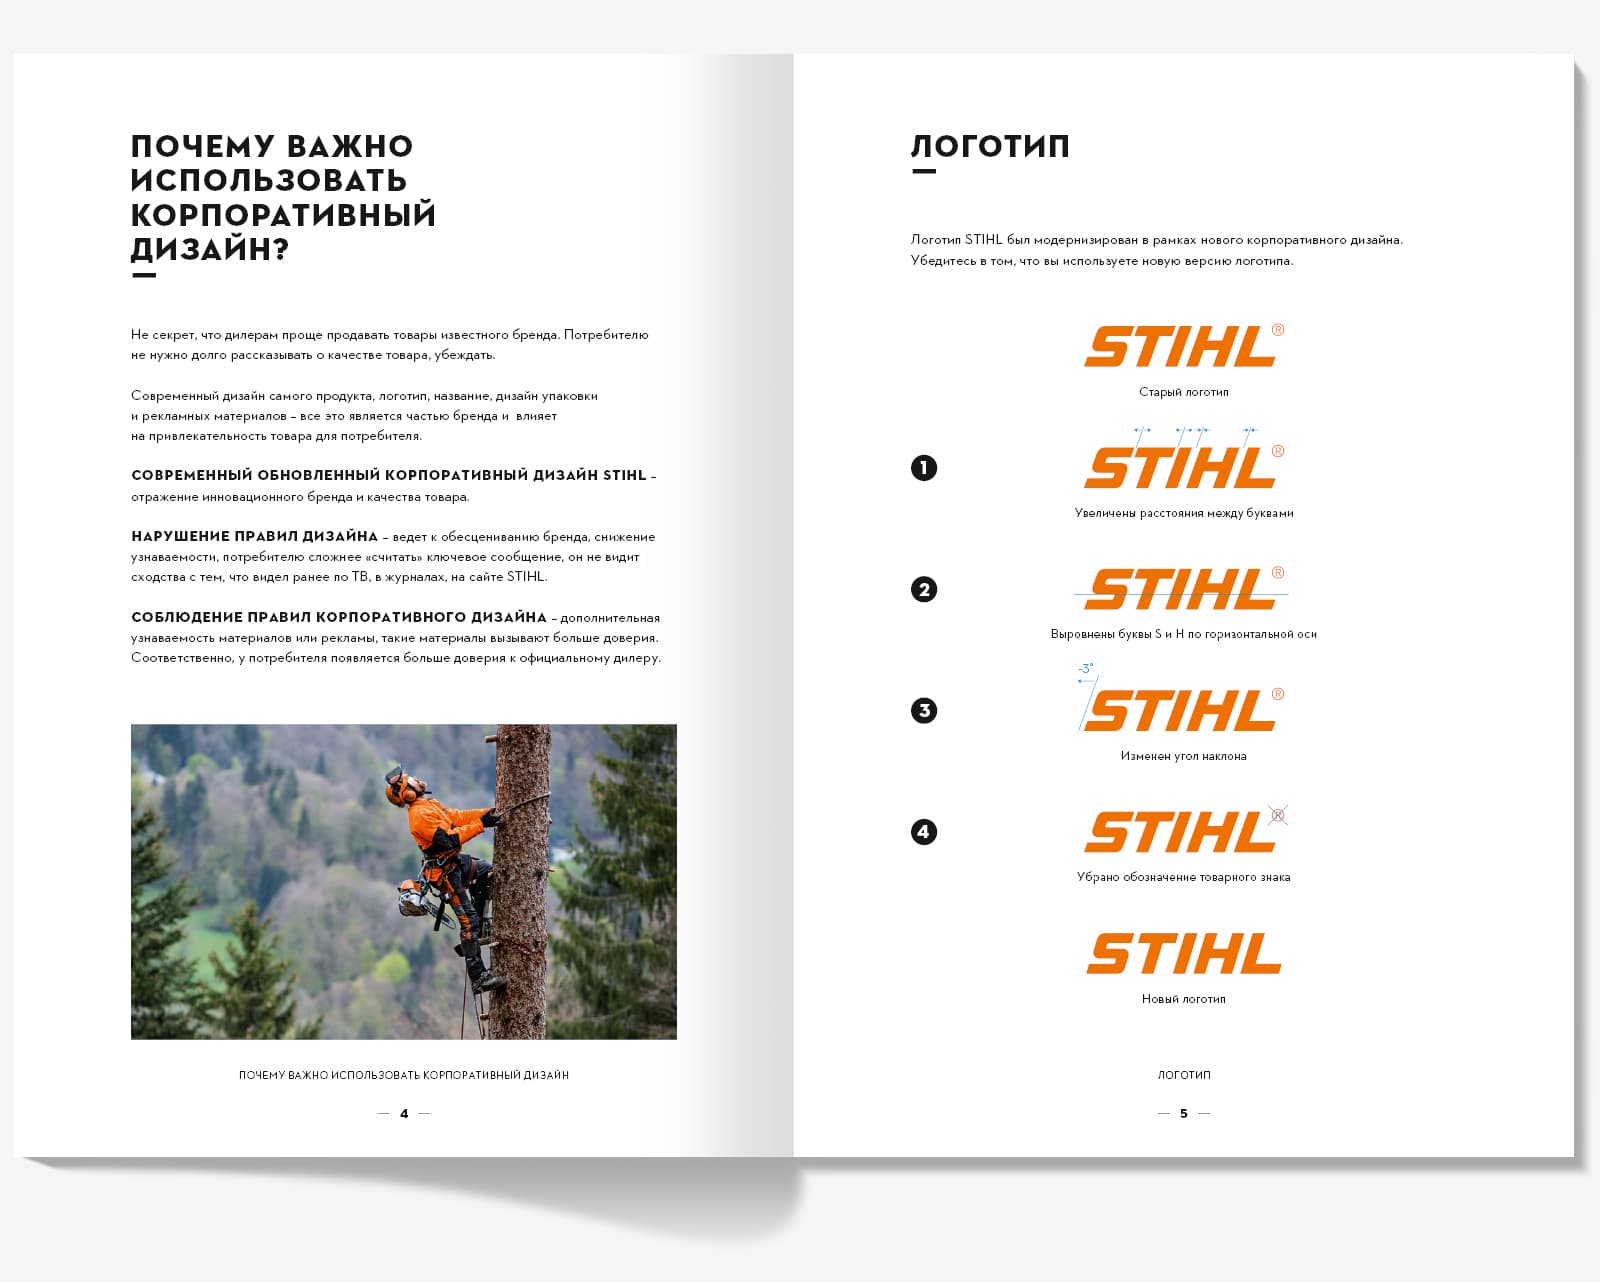 Сделали дизайн брошюры «Корпоративный дизайн STIHL» для компании STIHL